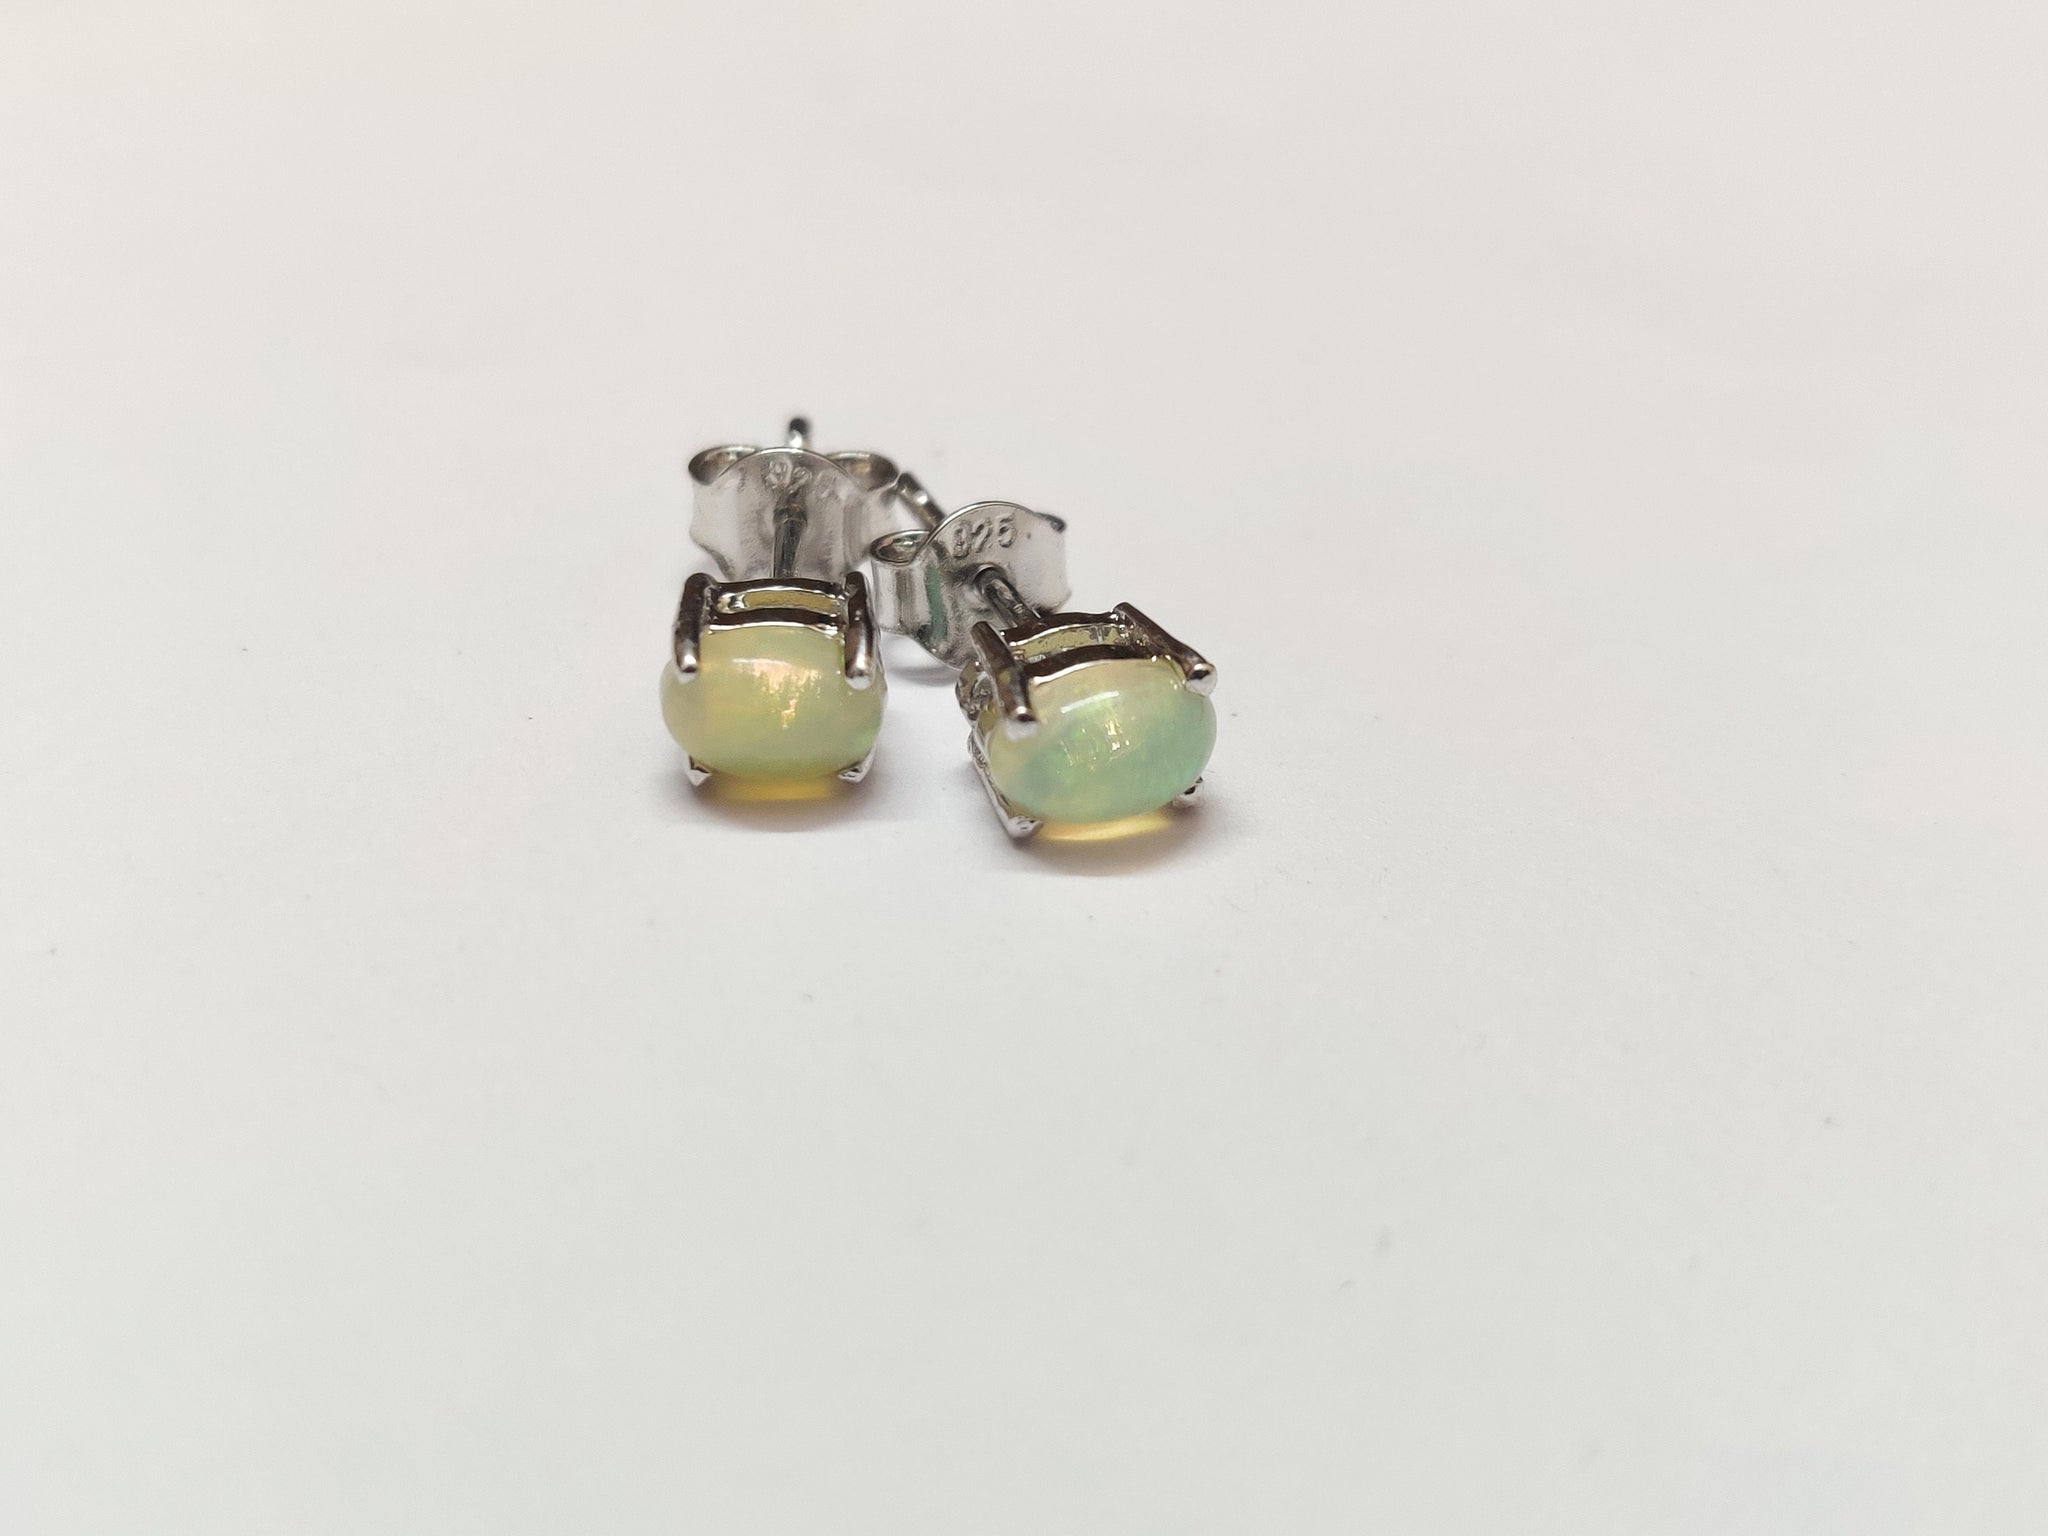 Opal Stud Earrings Opal Ear Studs 0.60 Ct Opal Earrings Natural Opal 4x6 mm Oval Earring Silver Opal Ear Studs October Birthstone Earrings